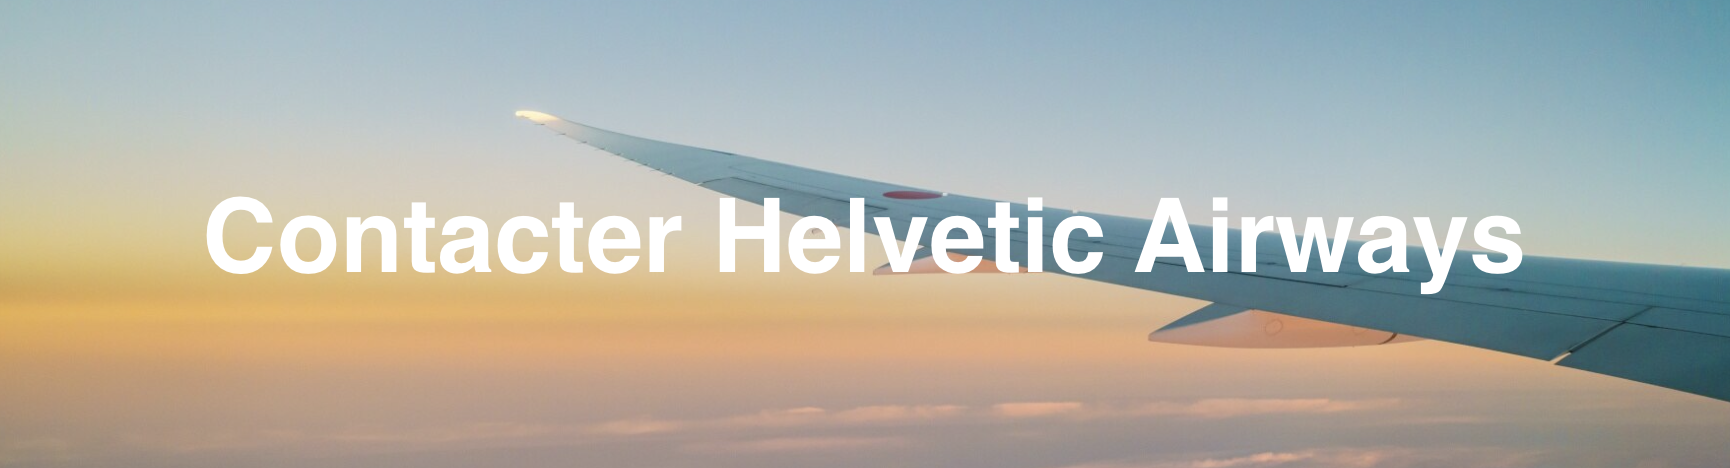 contacter Helvetic Airways 